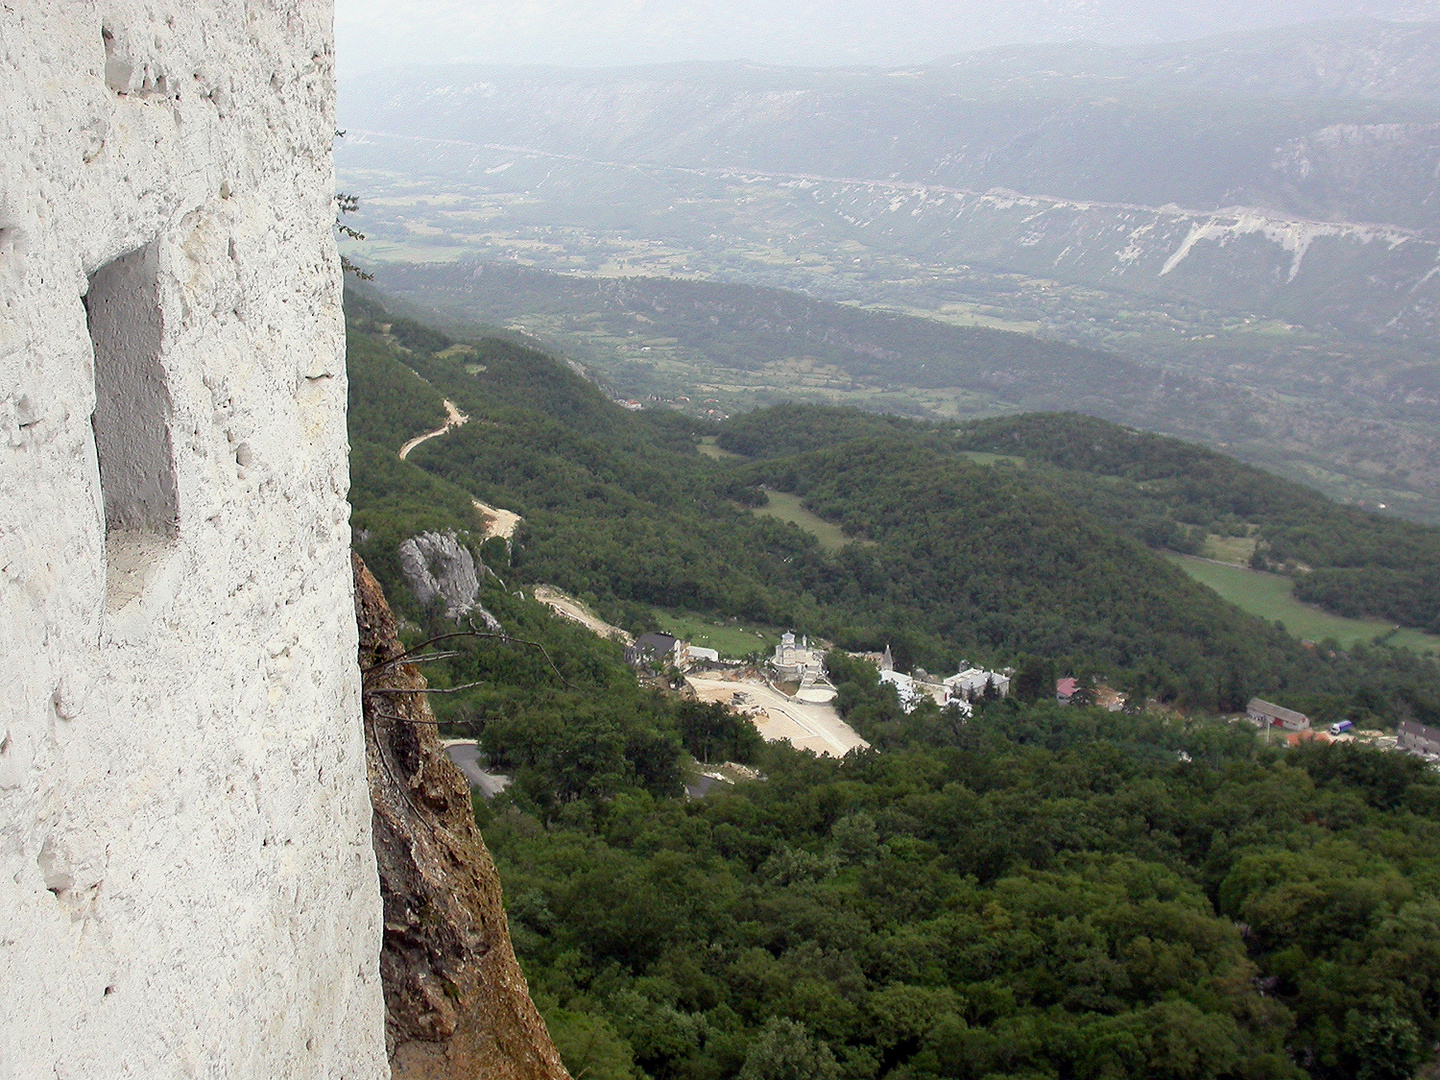 "Blick in die Tiefe, Weite und Ferne von Kloster Ostrog, Montenegro